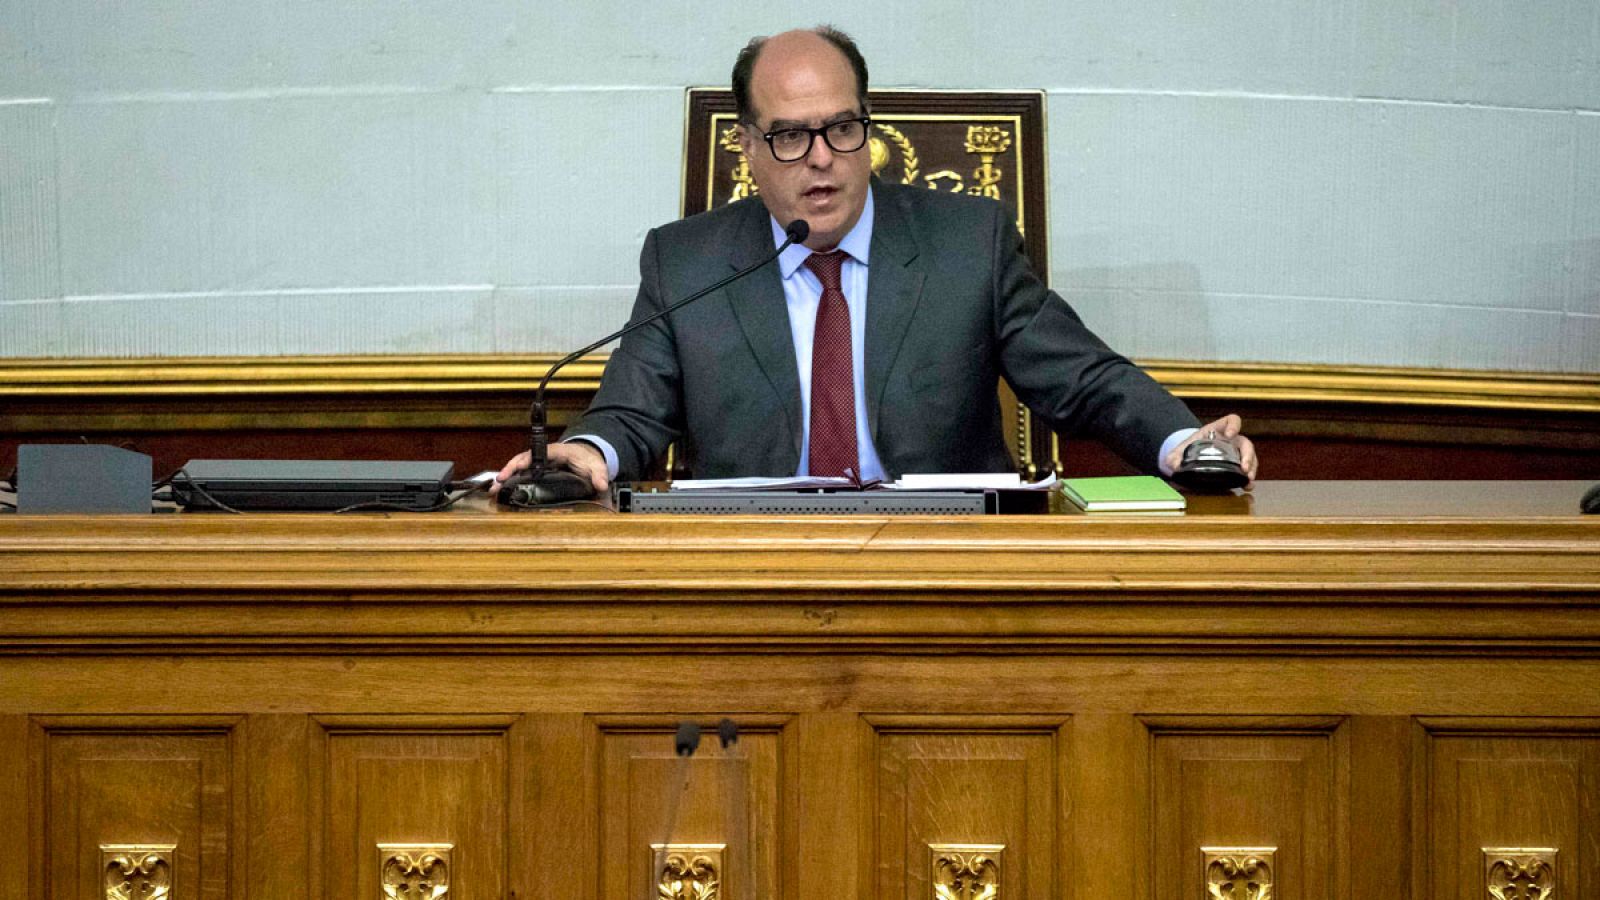 El presidente de la Asamblea Nacional, Julio Borges, hablando durante una sesión del Parlamento el jueves 19 de octubre de 2017 en Caracas (Venezuela).